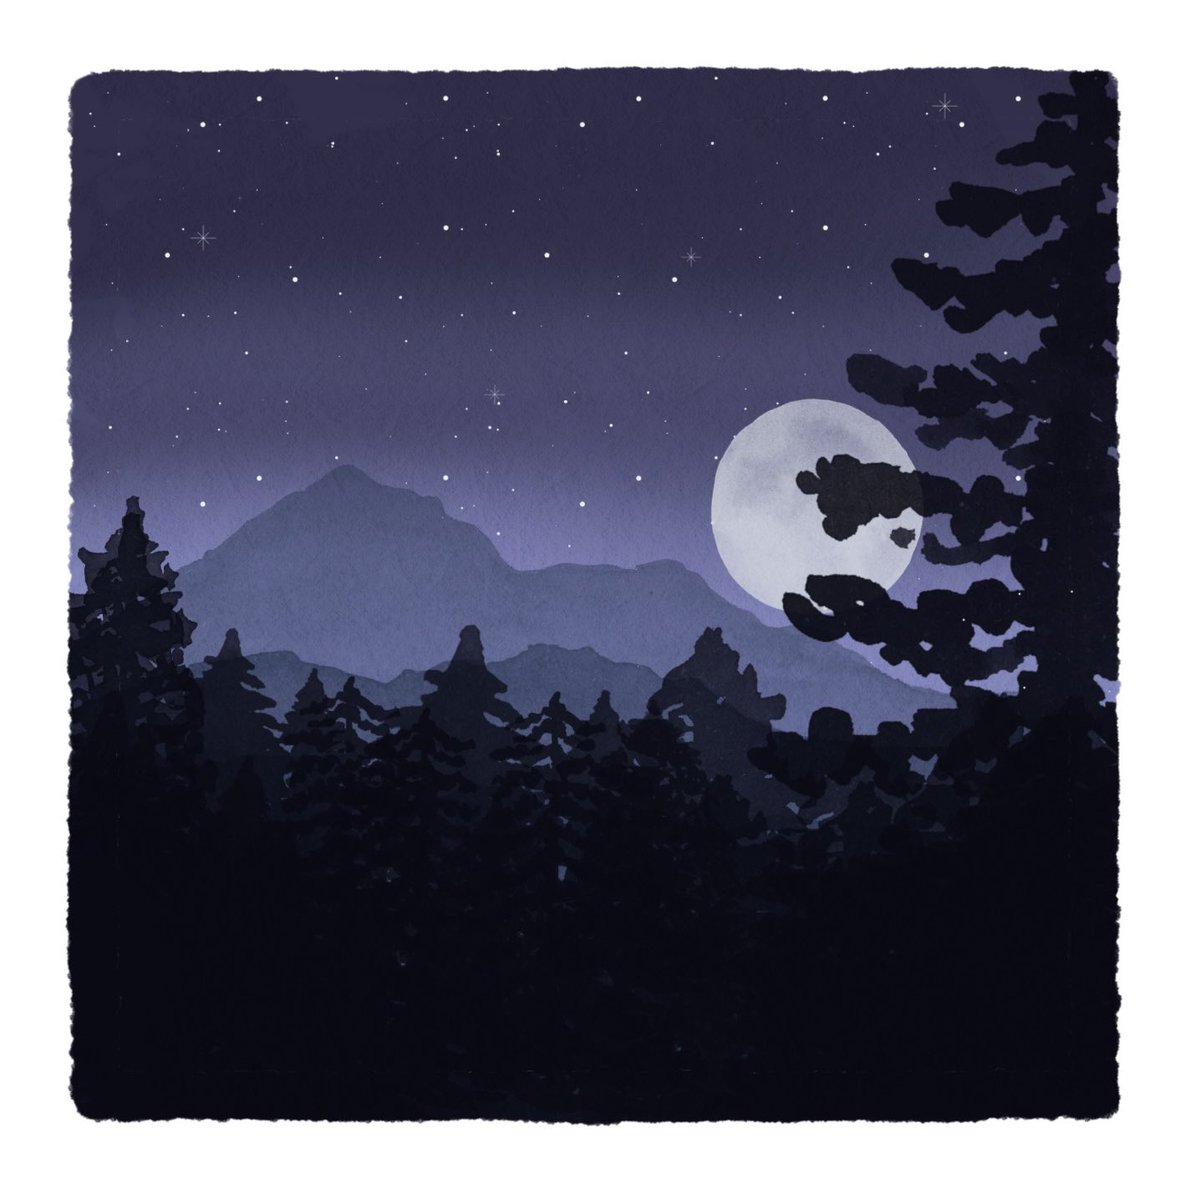 Digitales Werk: Grundton dunkel blau lila, in mehreren Enenen liegen Bergsilhouetten und Tannenwald übereinander. Etwas Nebel und rechts mittig ein großer fahler Mond.